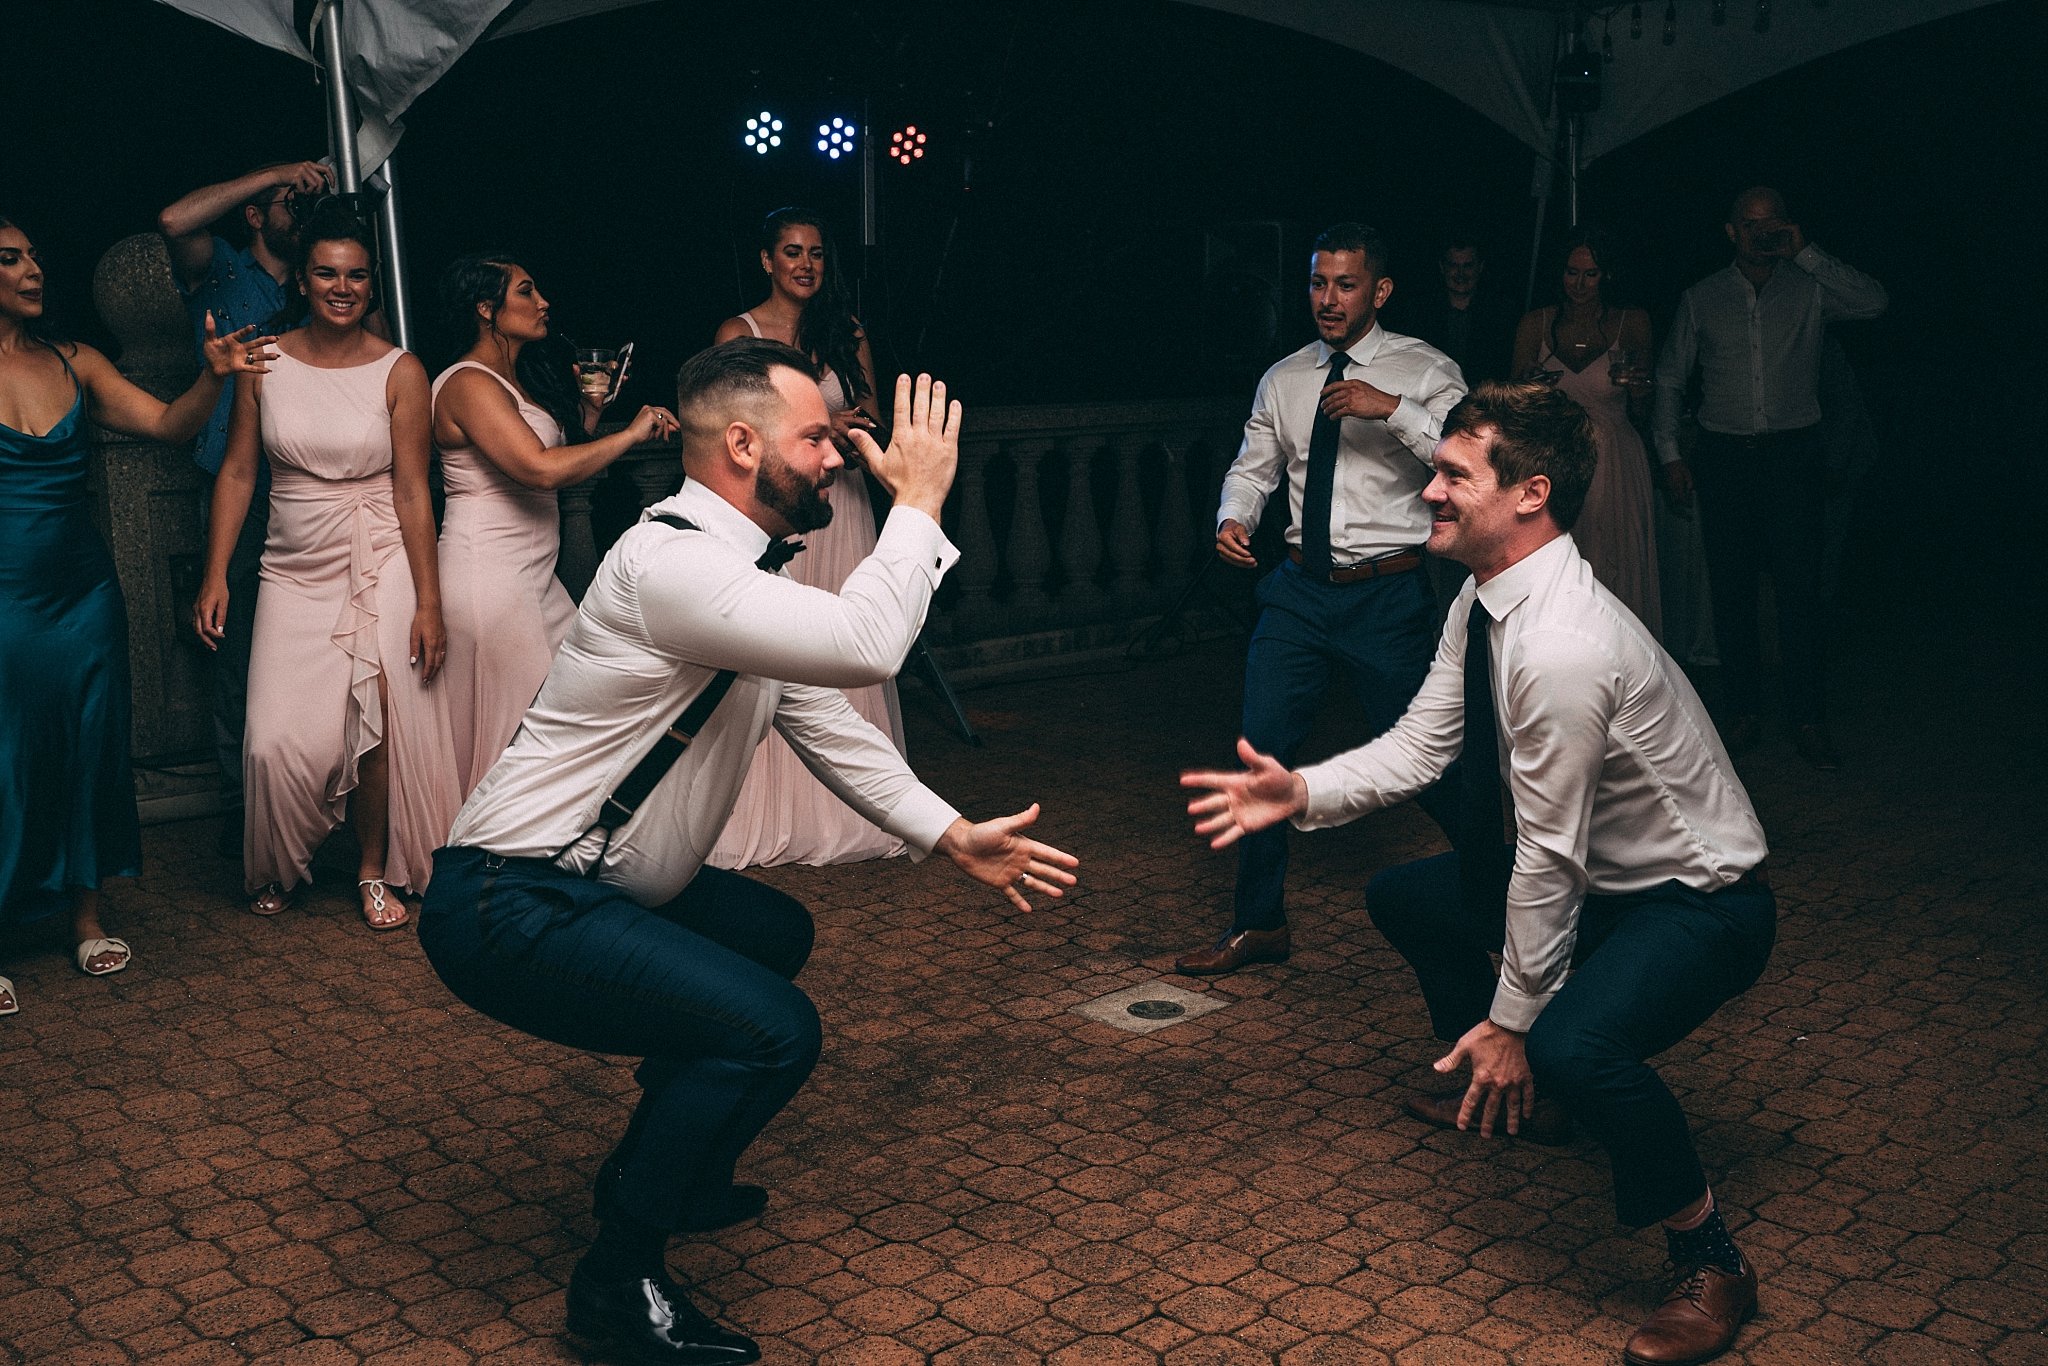 groom dancing with groomsmen